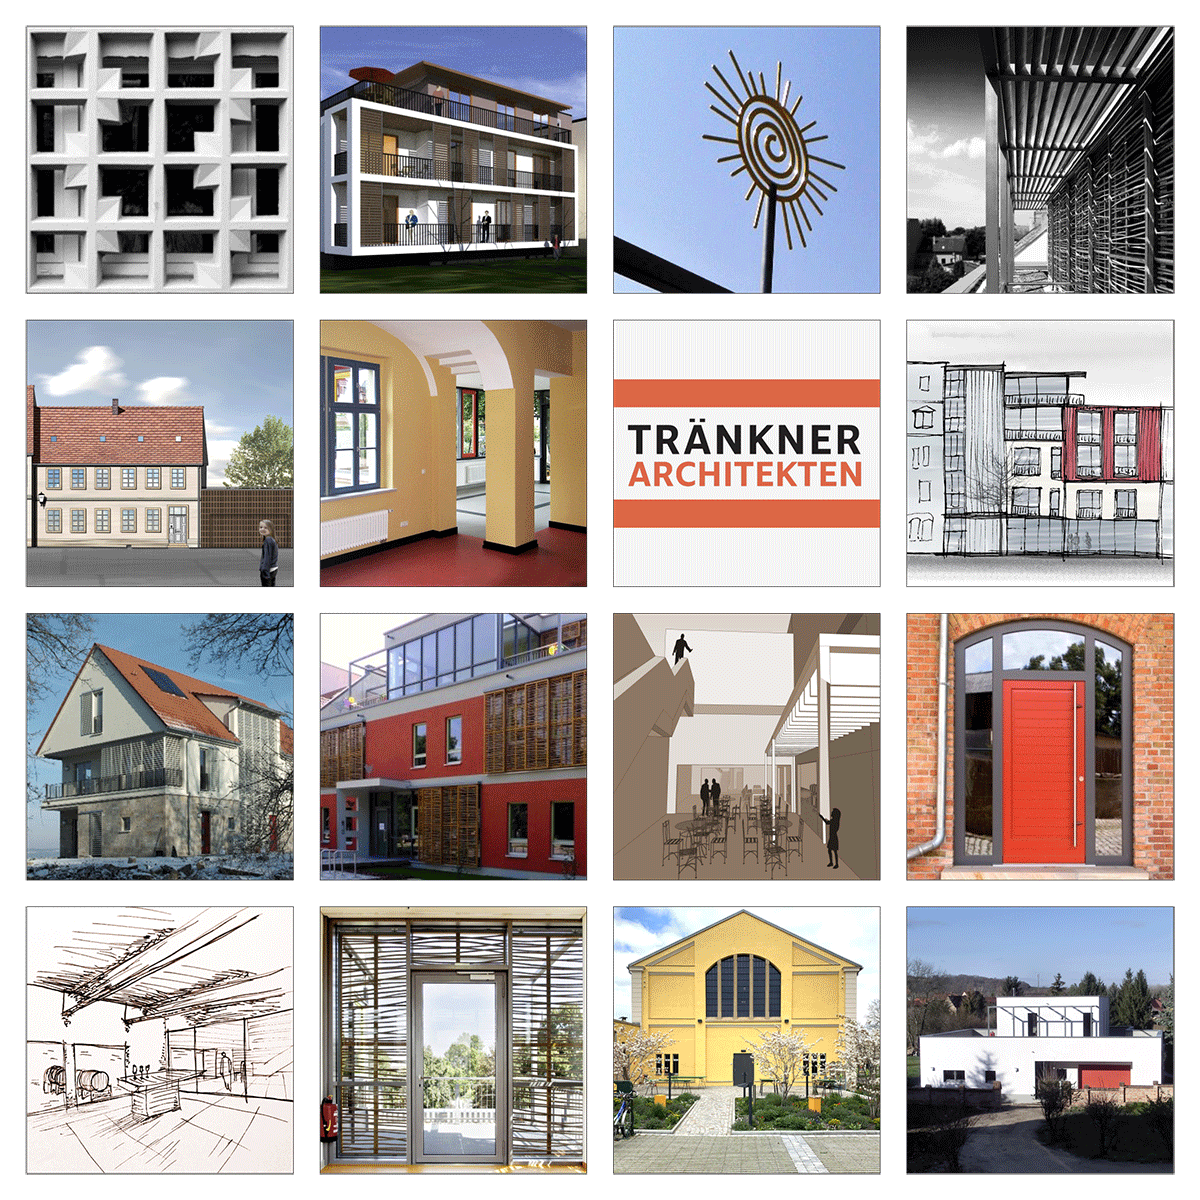 Tränkner Architekten